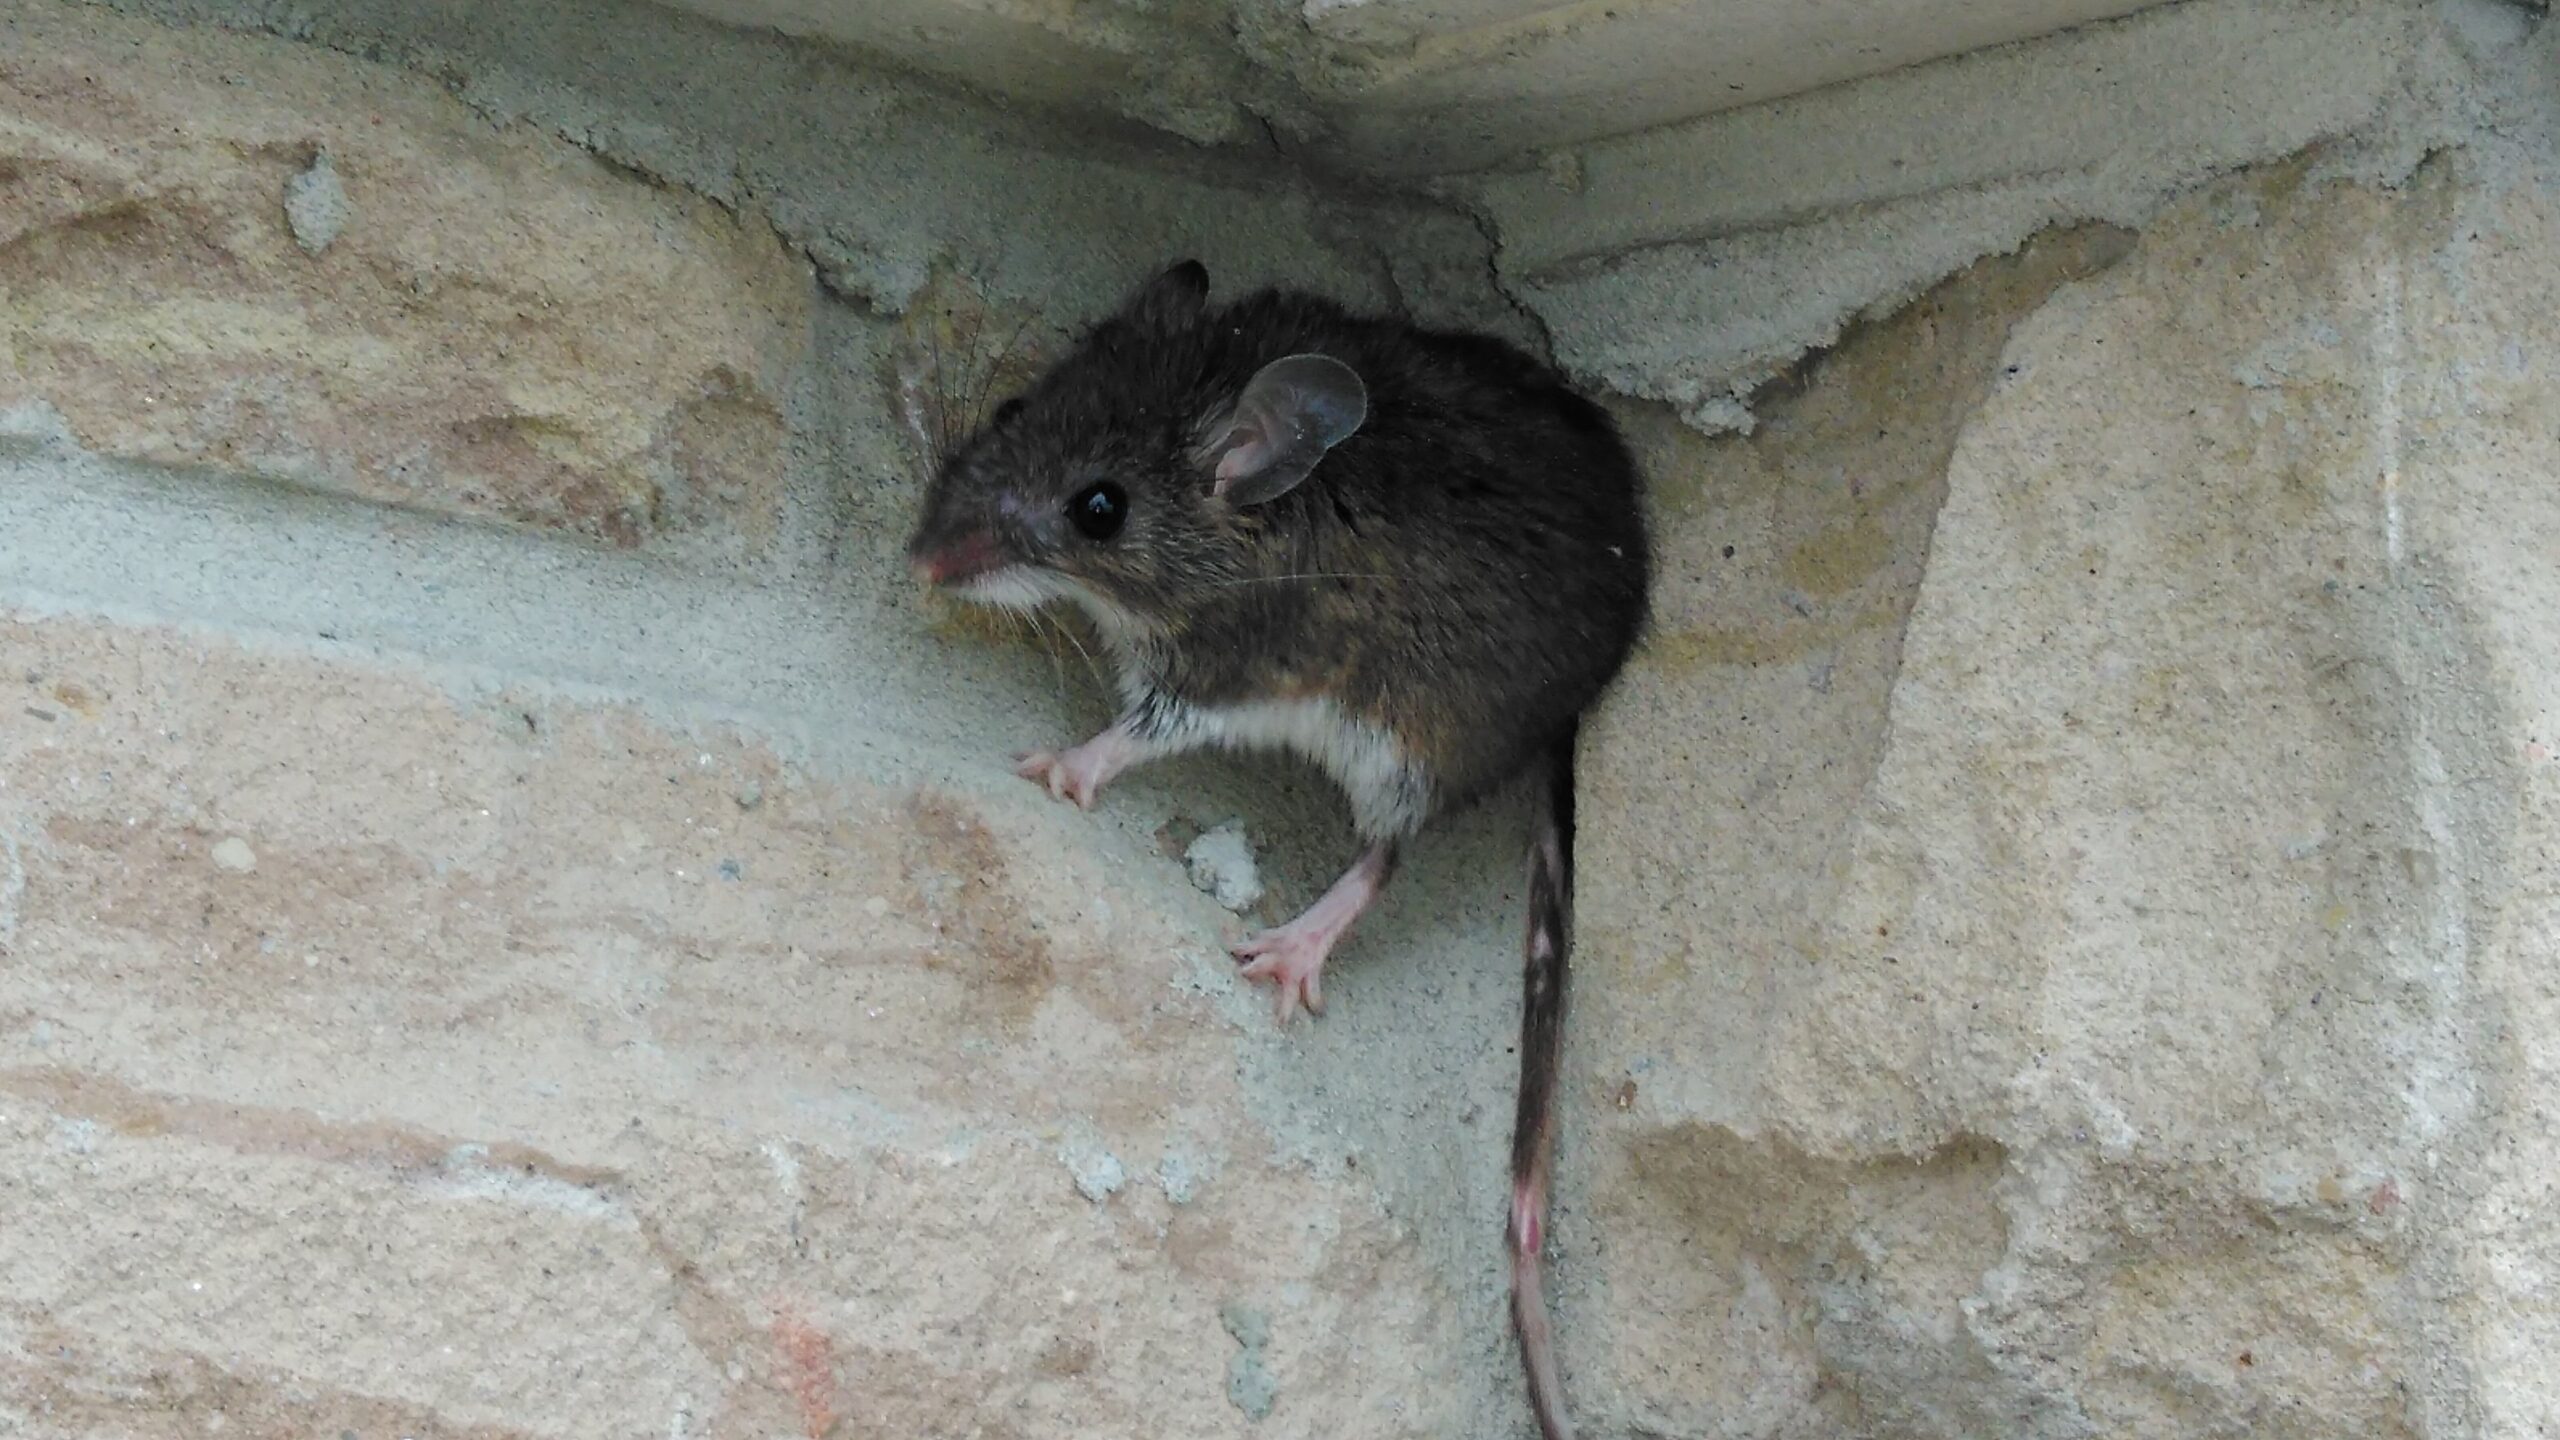 What Happens If a Human Eats Rat Poison?